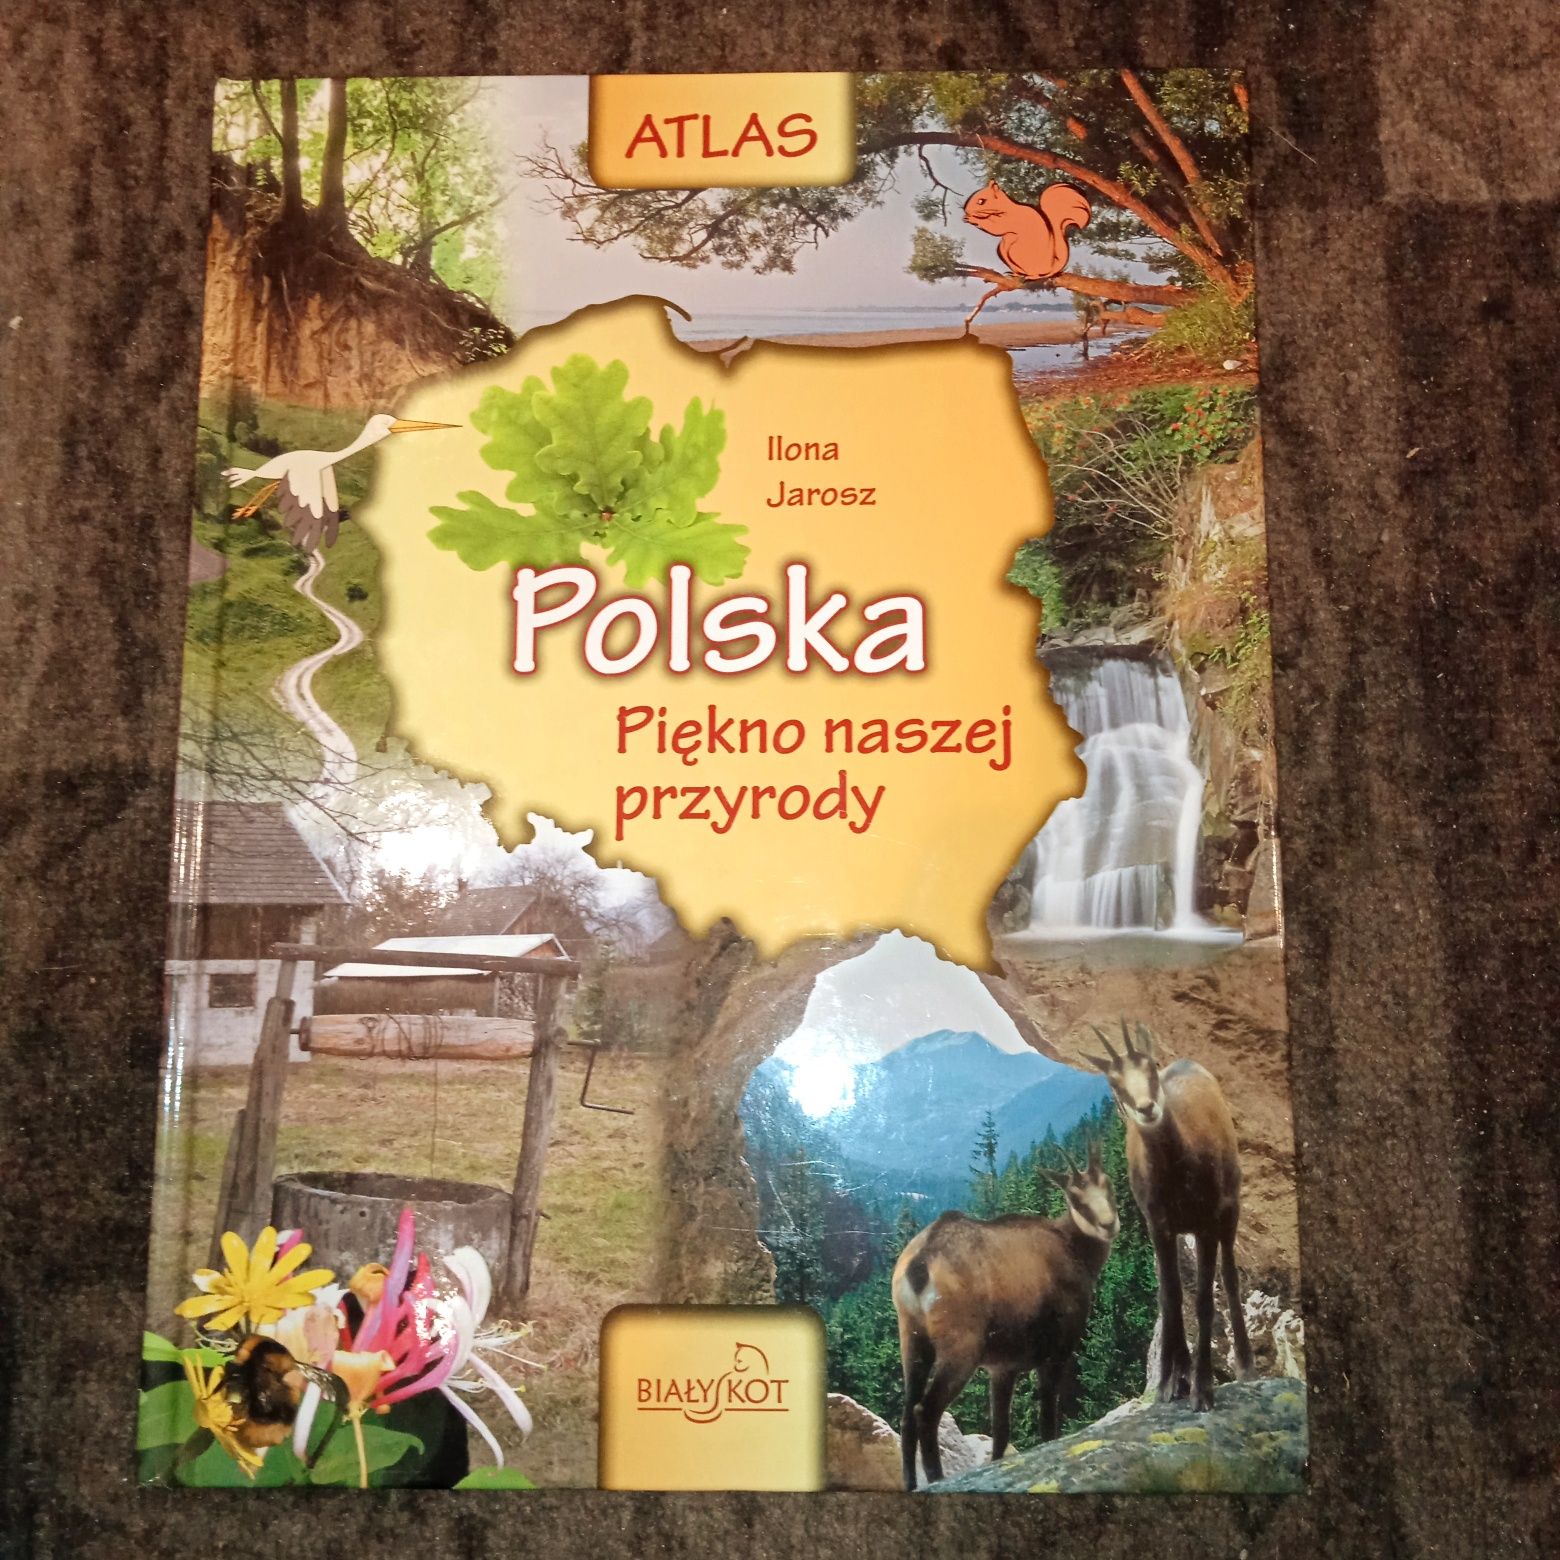 Polska - piękno naszej przyrody. Atlas.